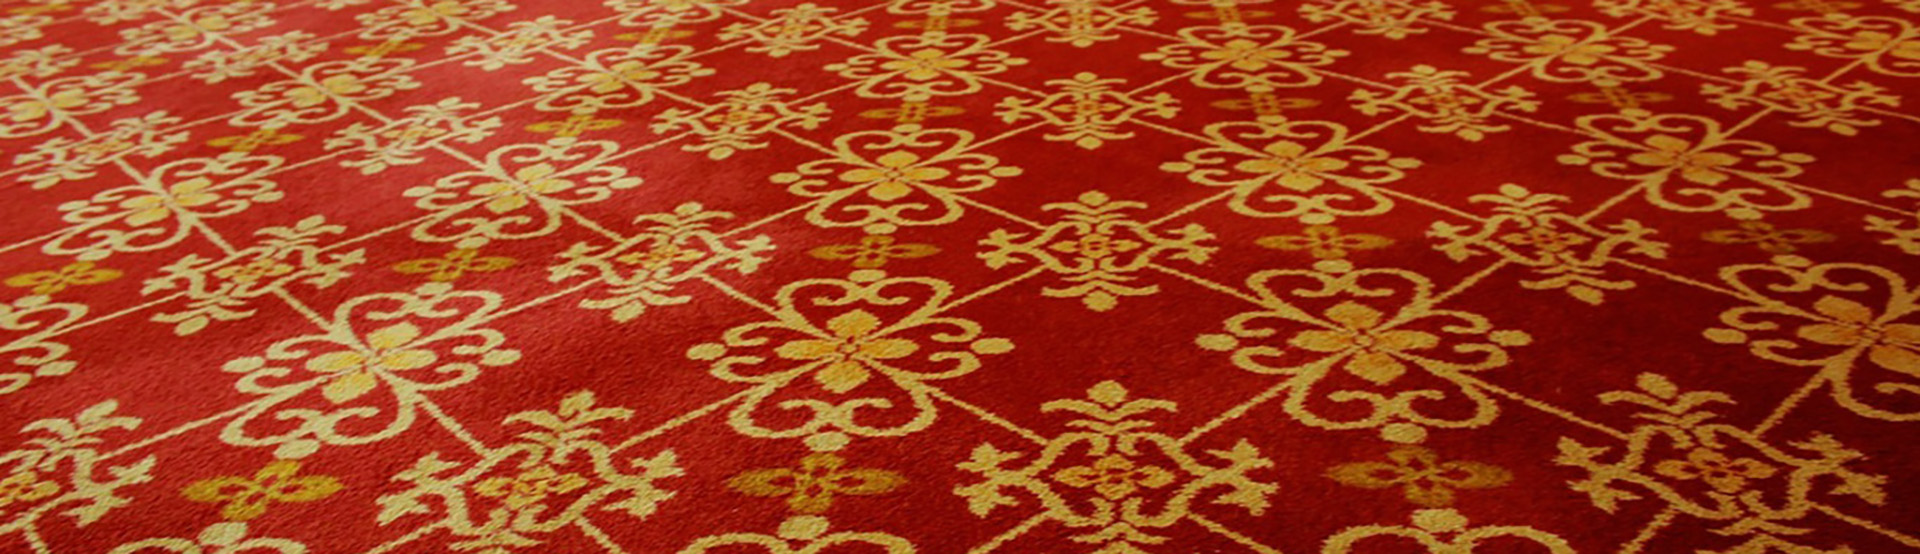 Heated carpet floor